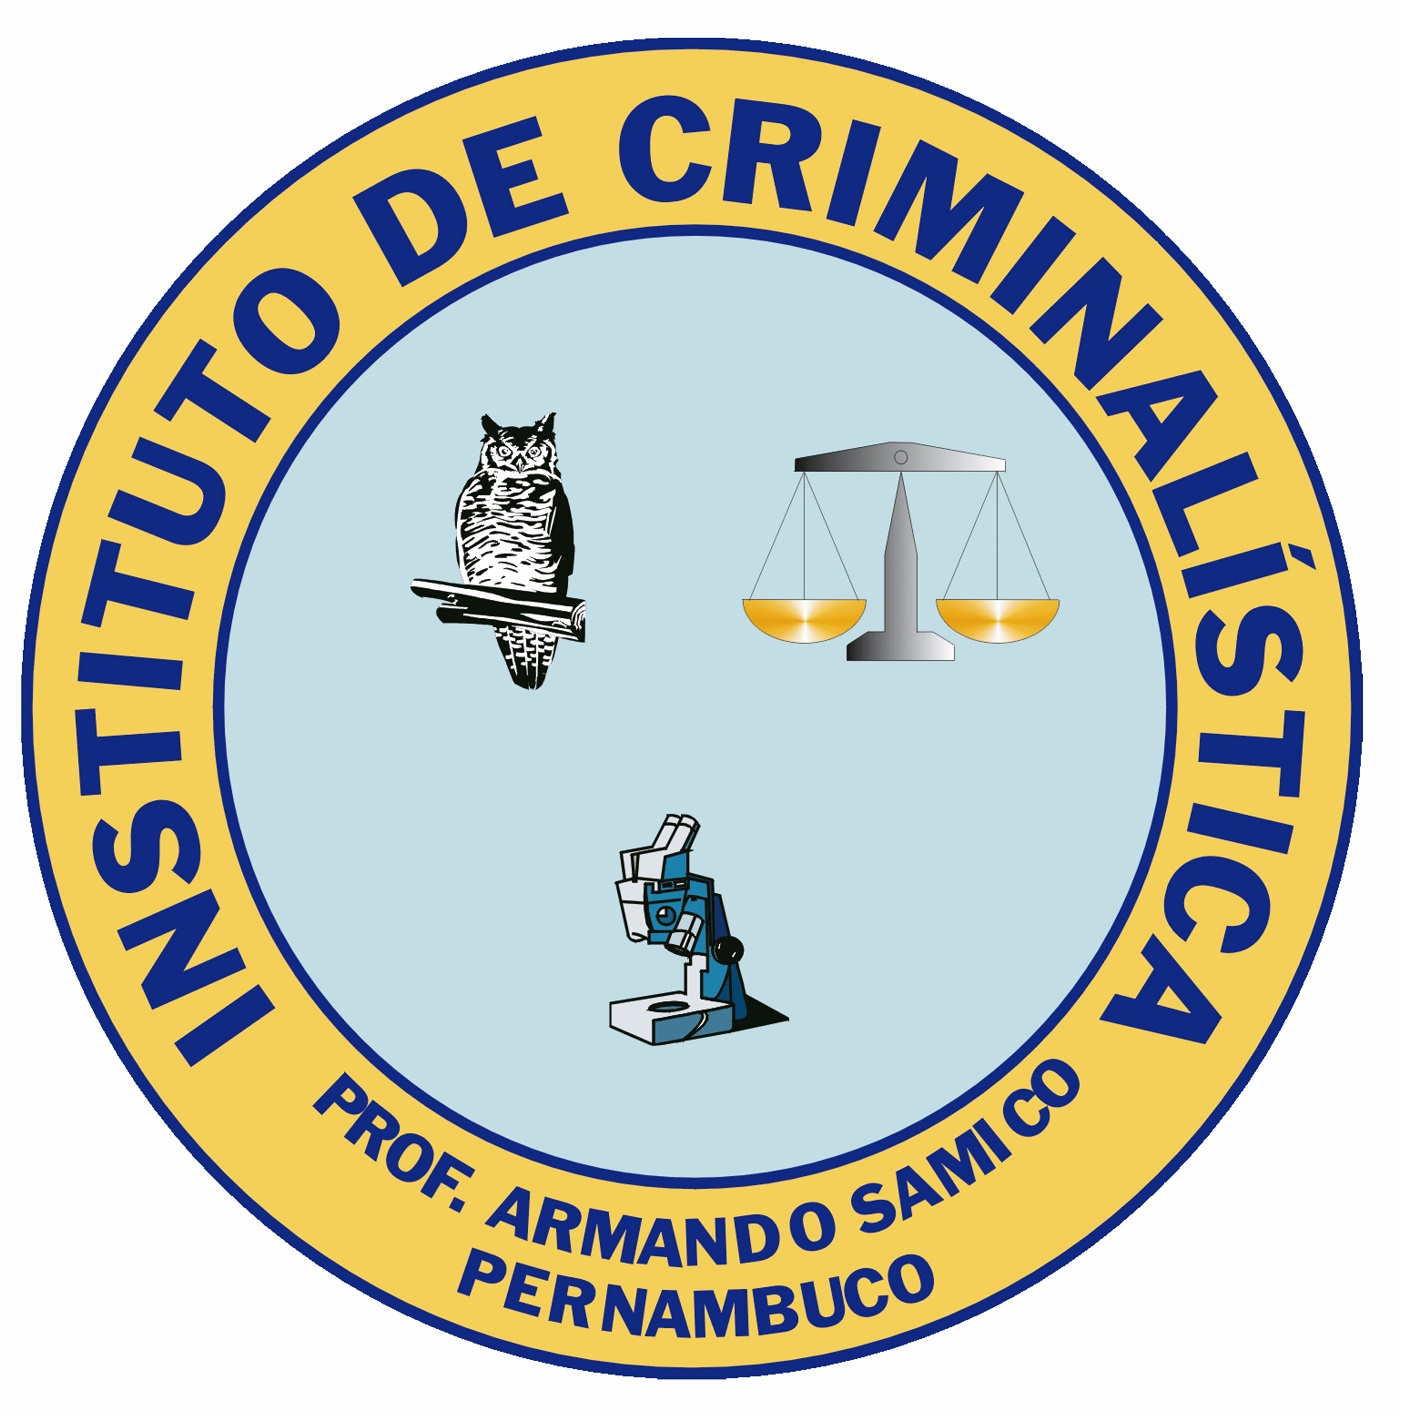 Instituto de Criminalística Professor Armando Samico